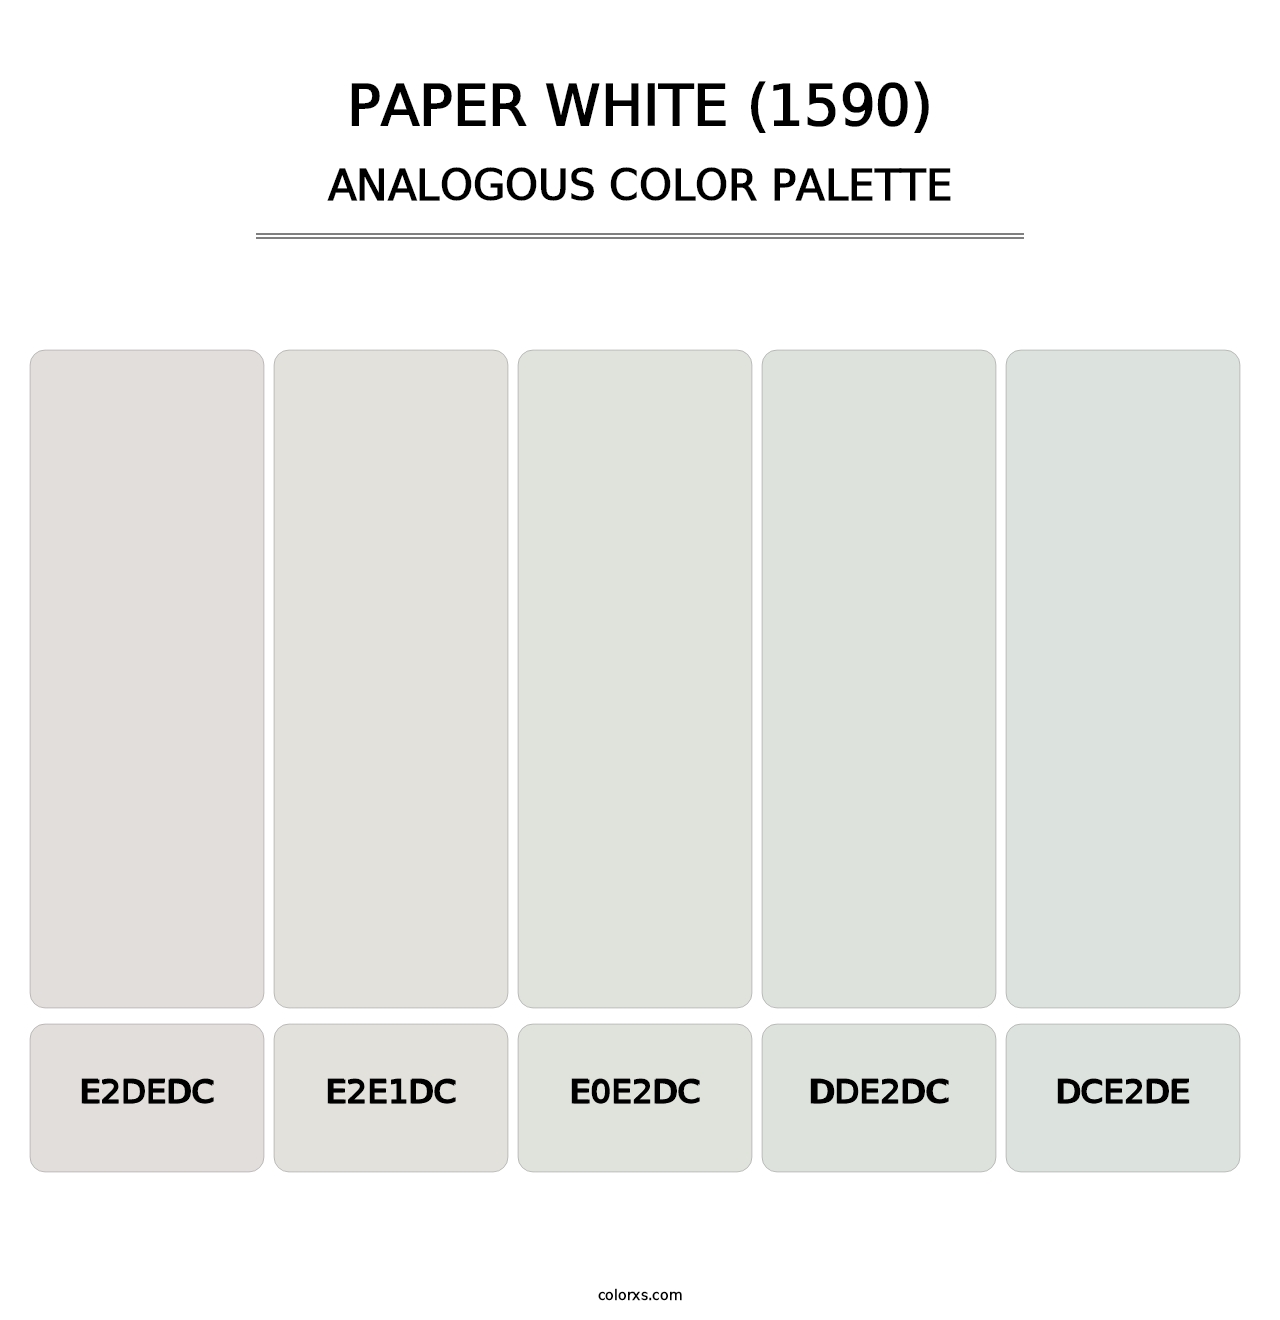 Paper White (1590) - Analogous Color Palette